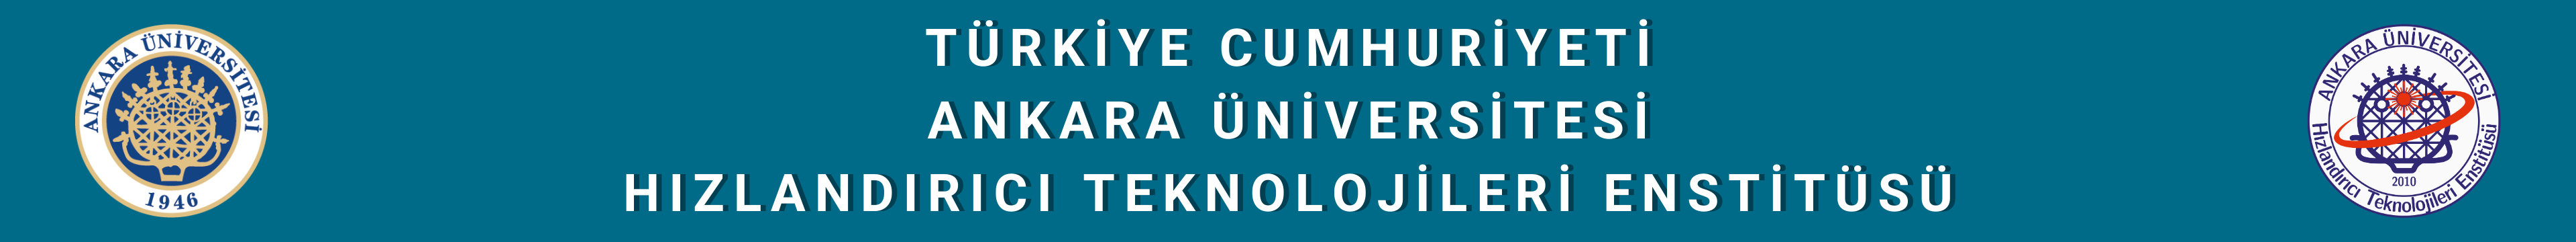 Hızlandırıcı Teknolojileri Enstitüsü Logo